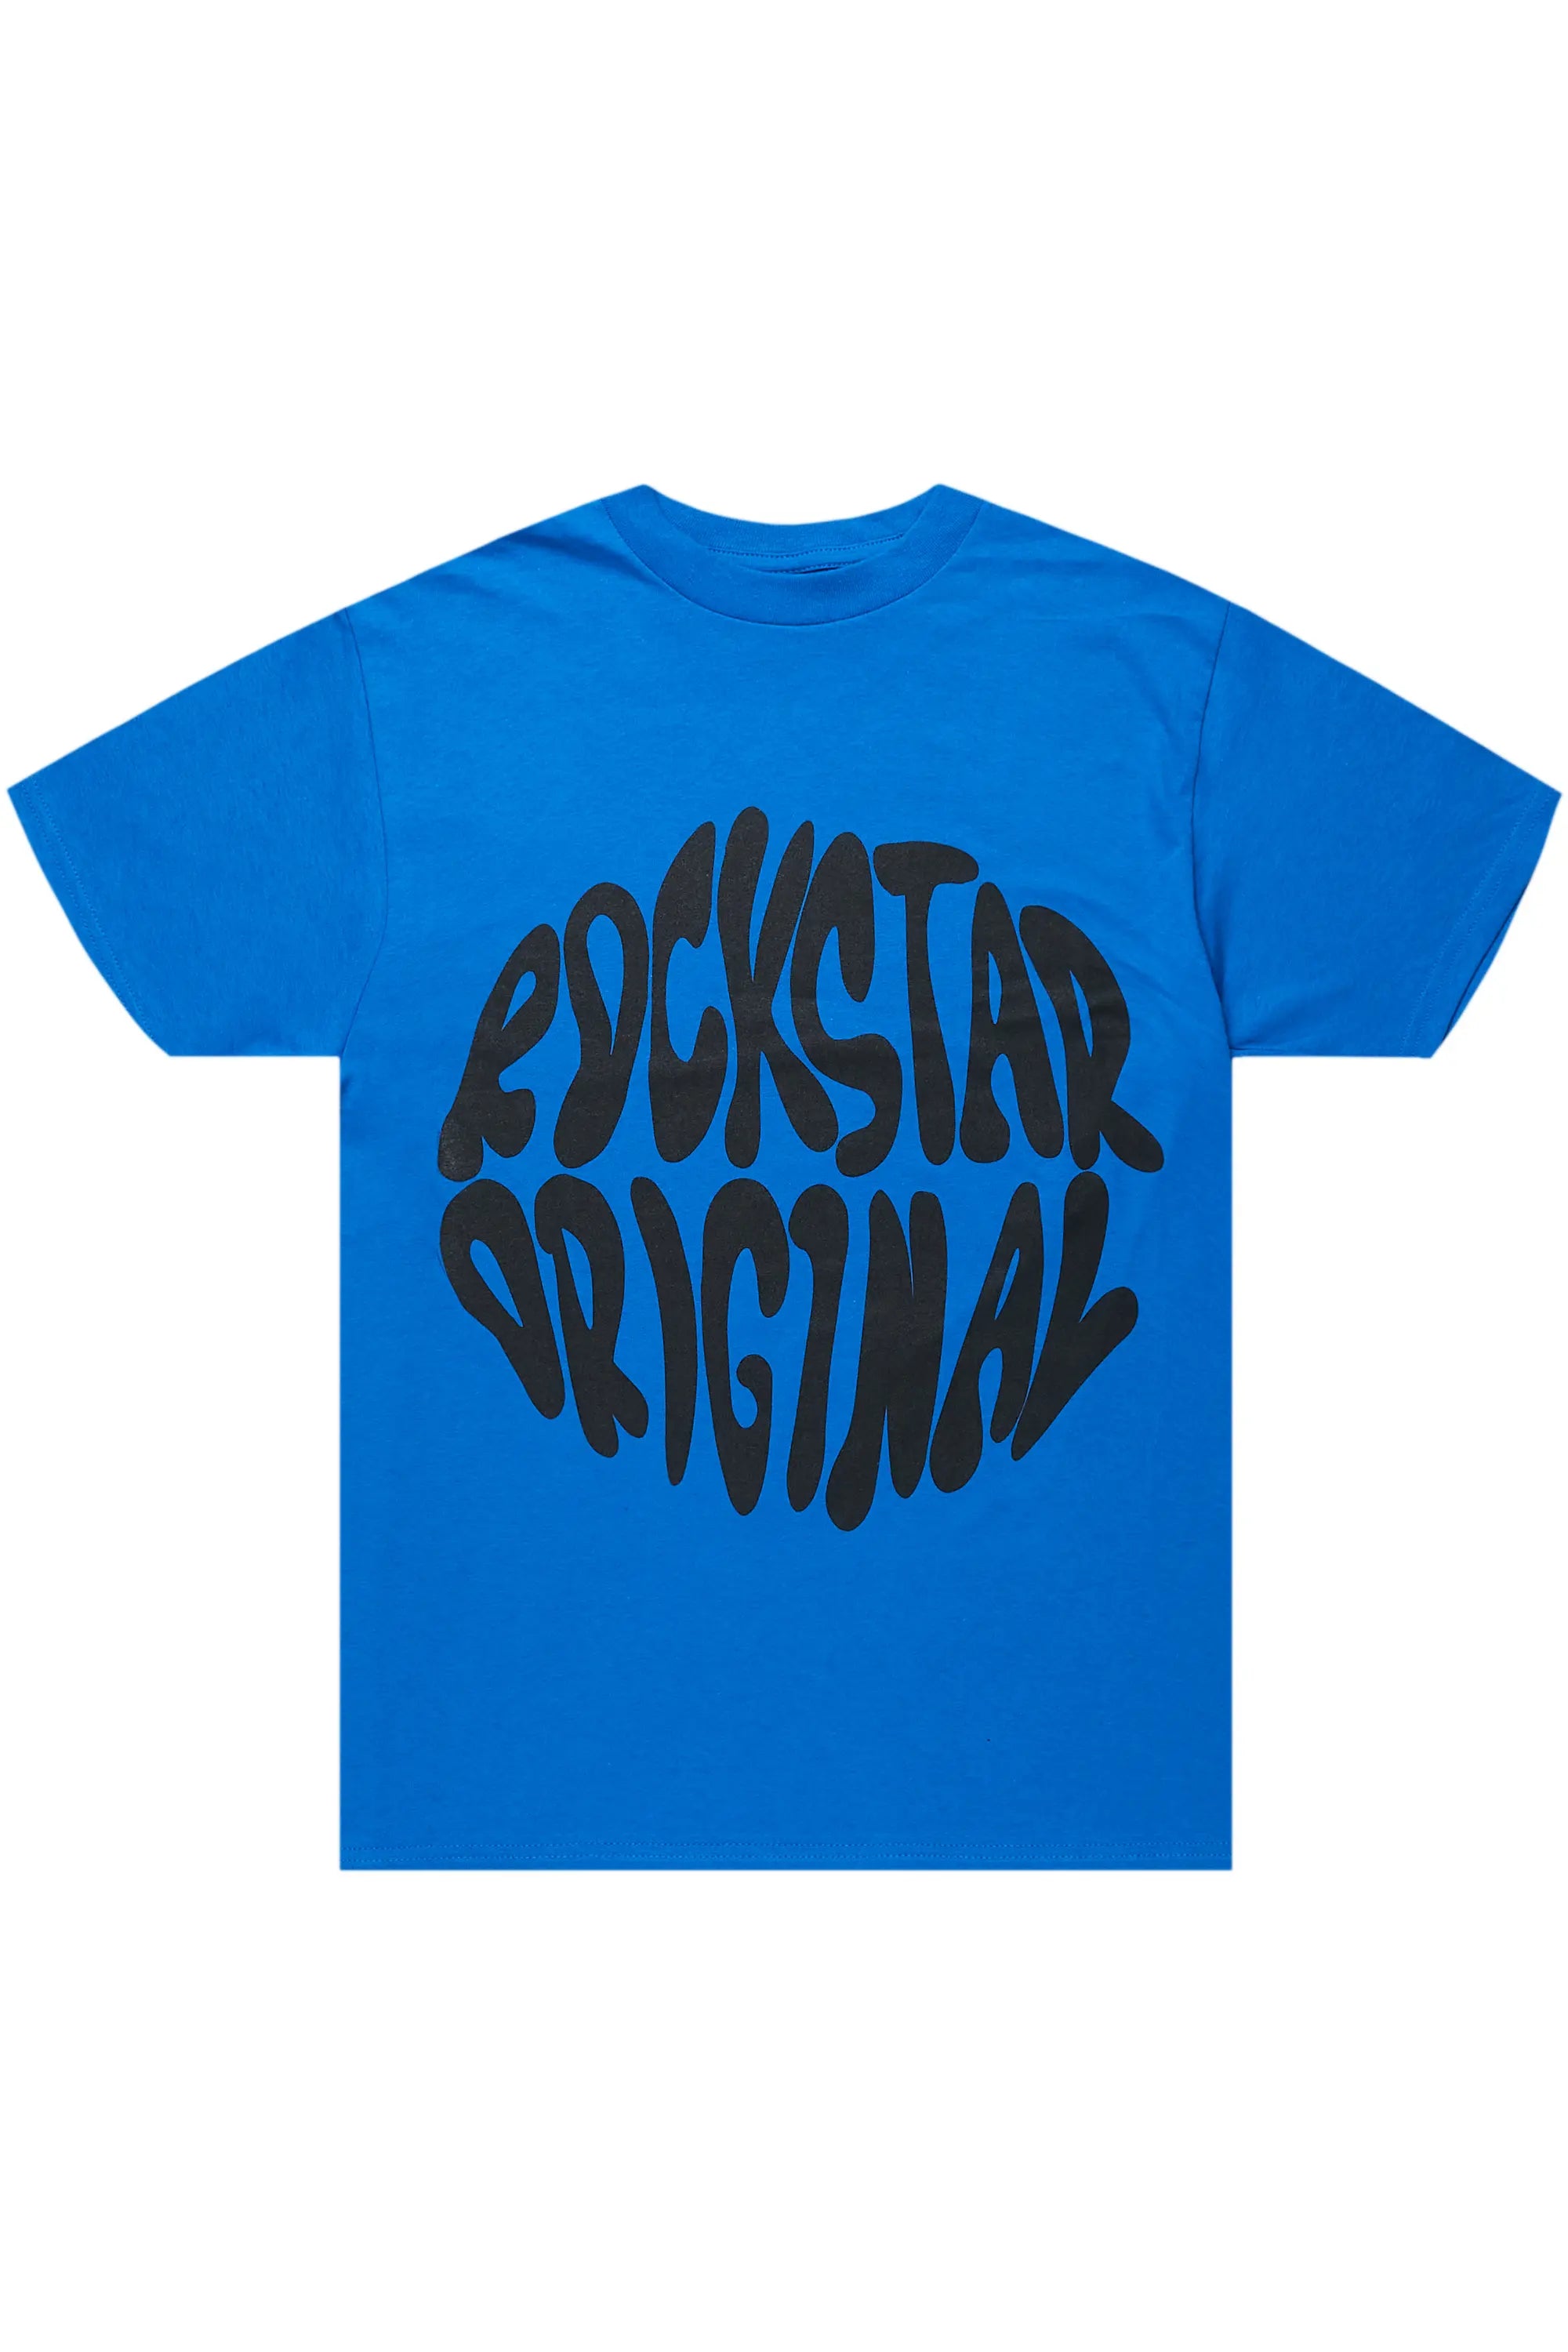 Maynor Royal Blue Oversized T-Shirt